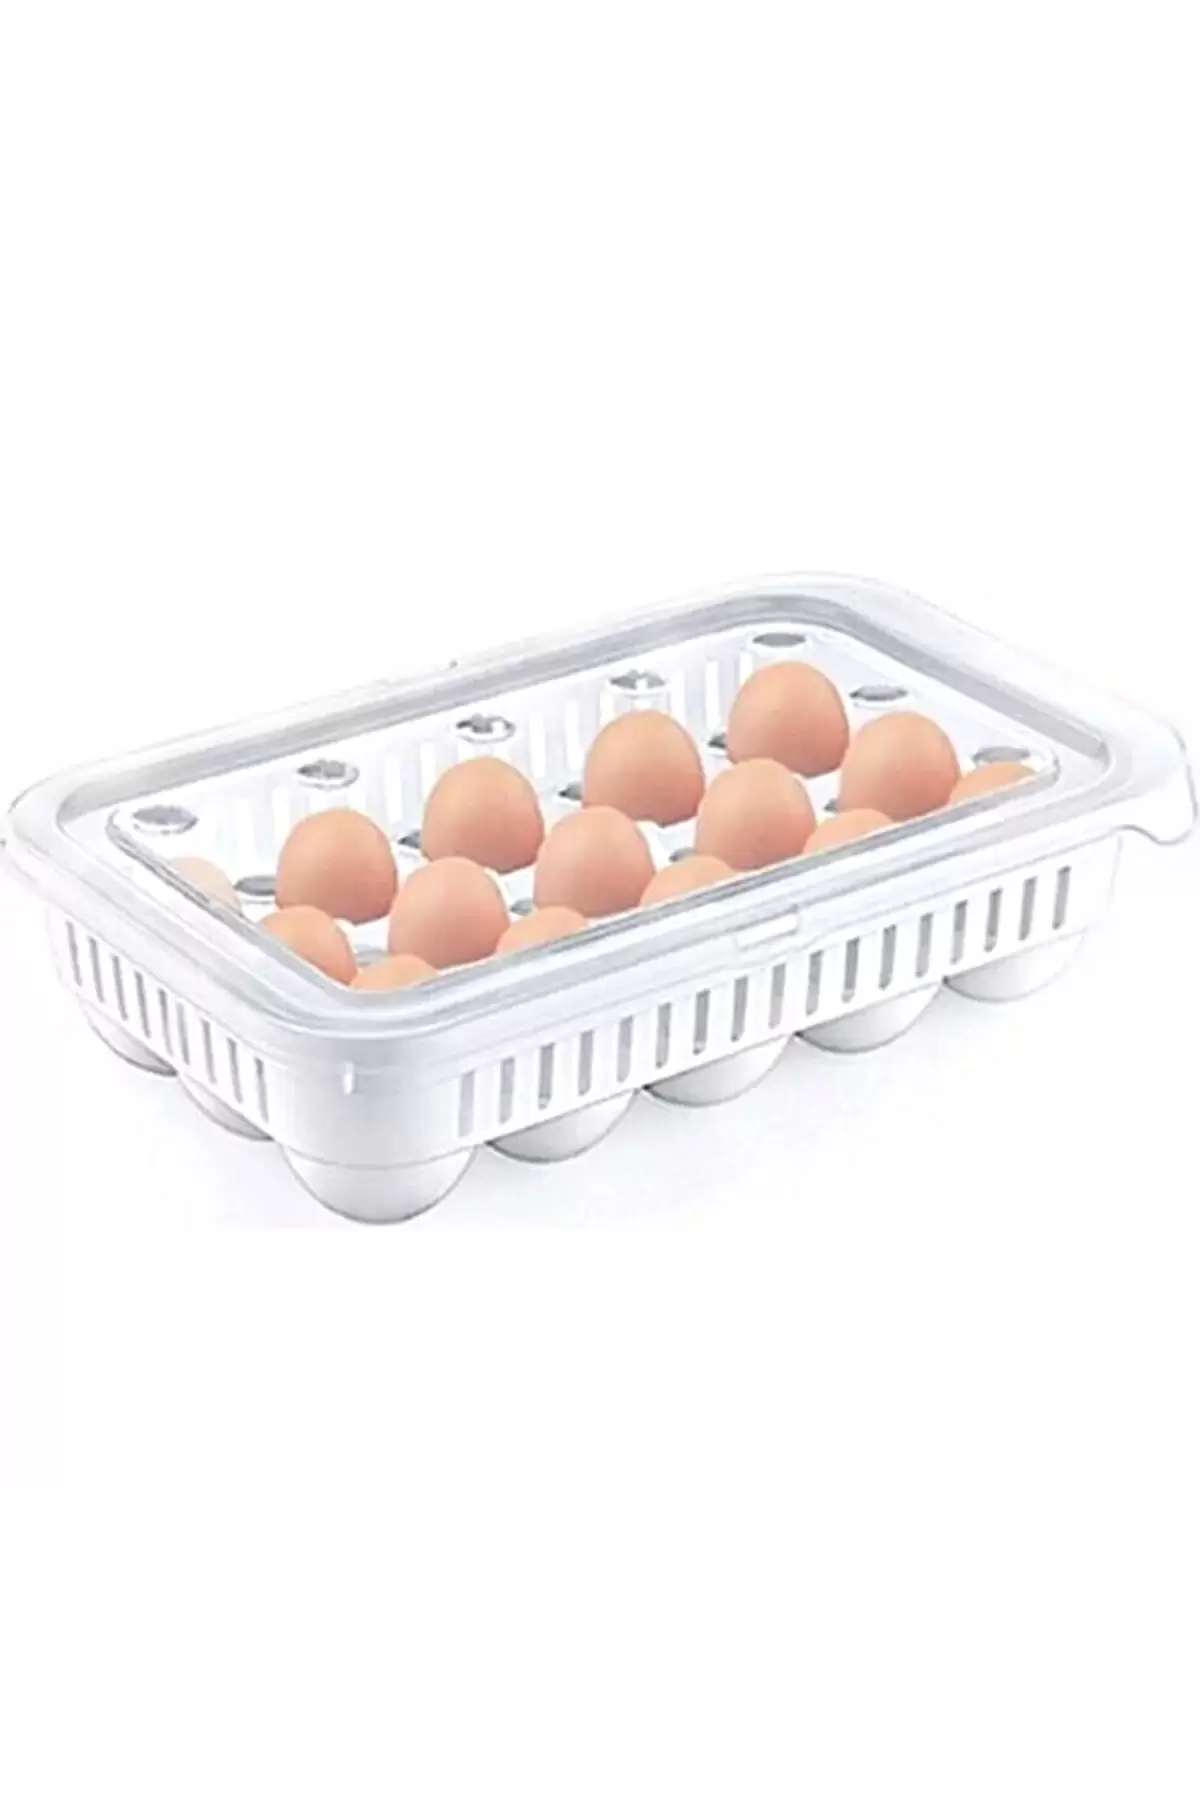 2 Adet 15li Yumurta Saklama Kabı Yumurtalık Kapaklı Buzdolabı Yumurta Kutusu Organizer Düzenleyici